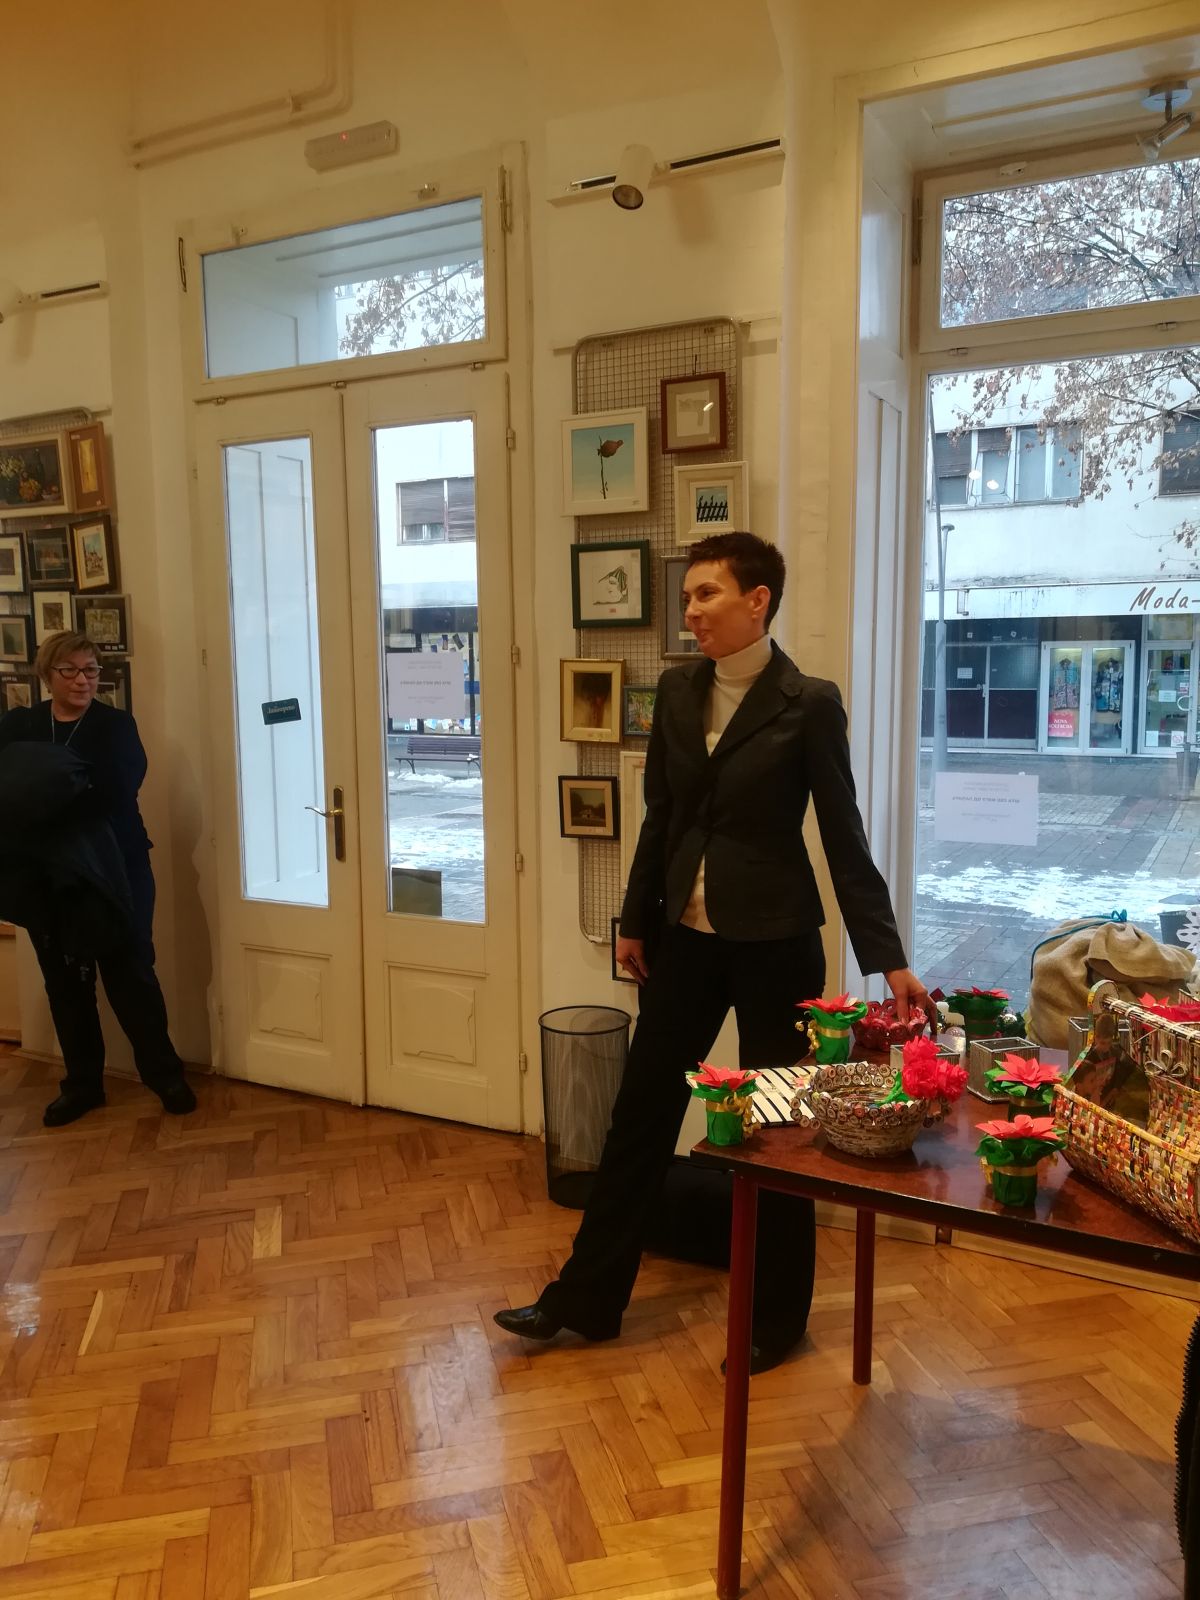 Prodajna izložba radova učenika Osnovne škole "Sveti Sava"